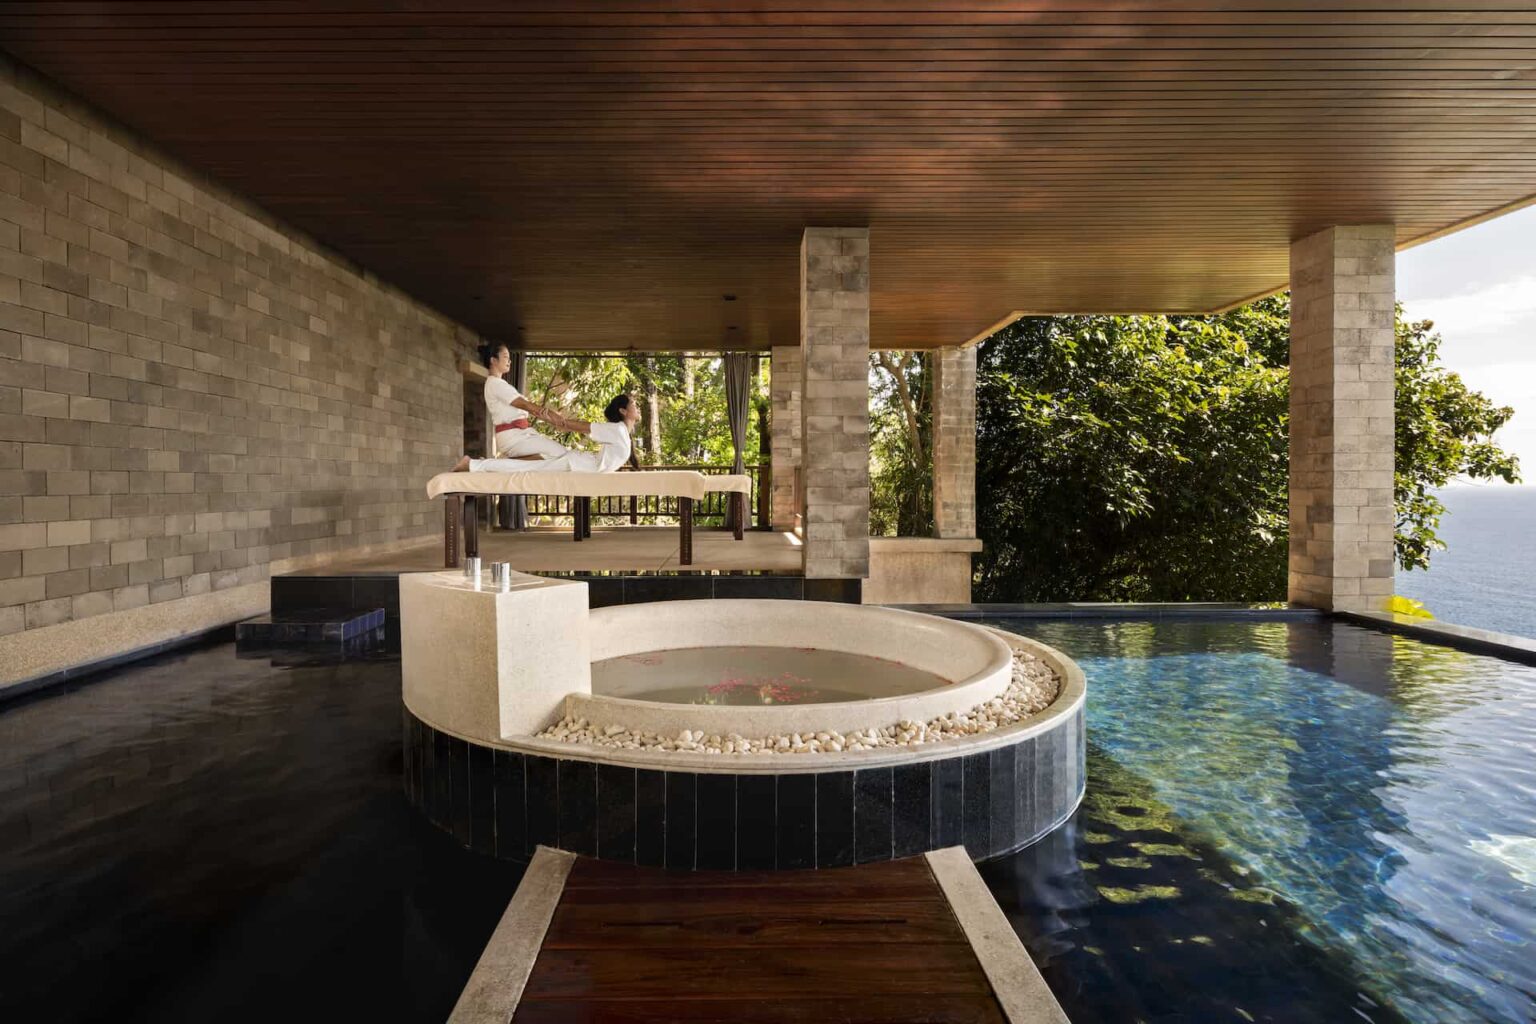 Spa Pool Suite with ocean view pool and marble sunken bathtub